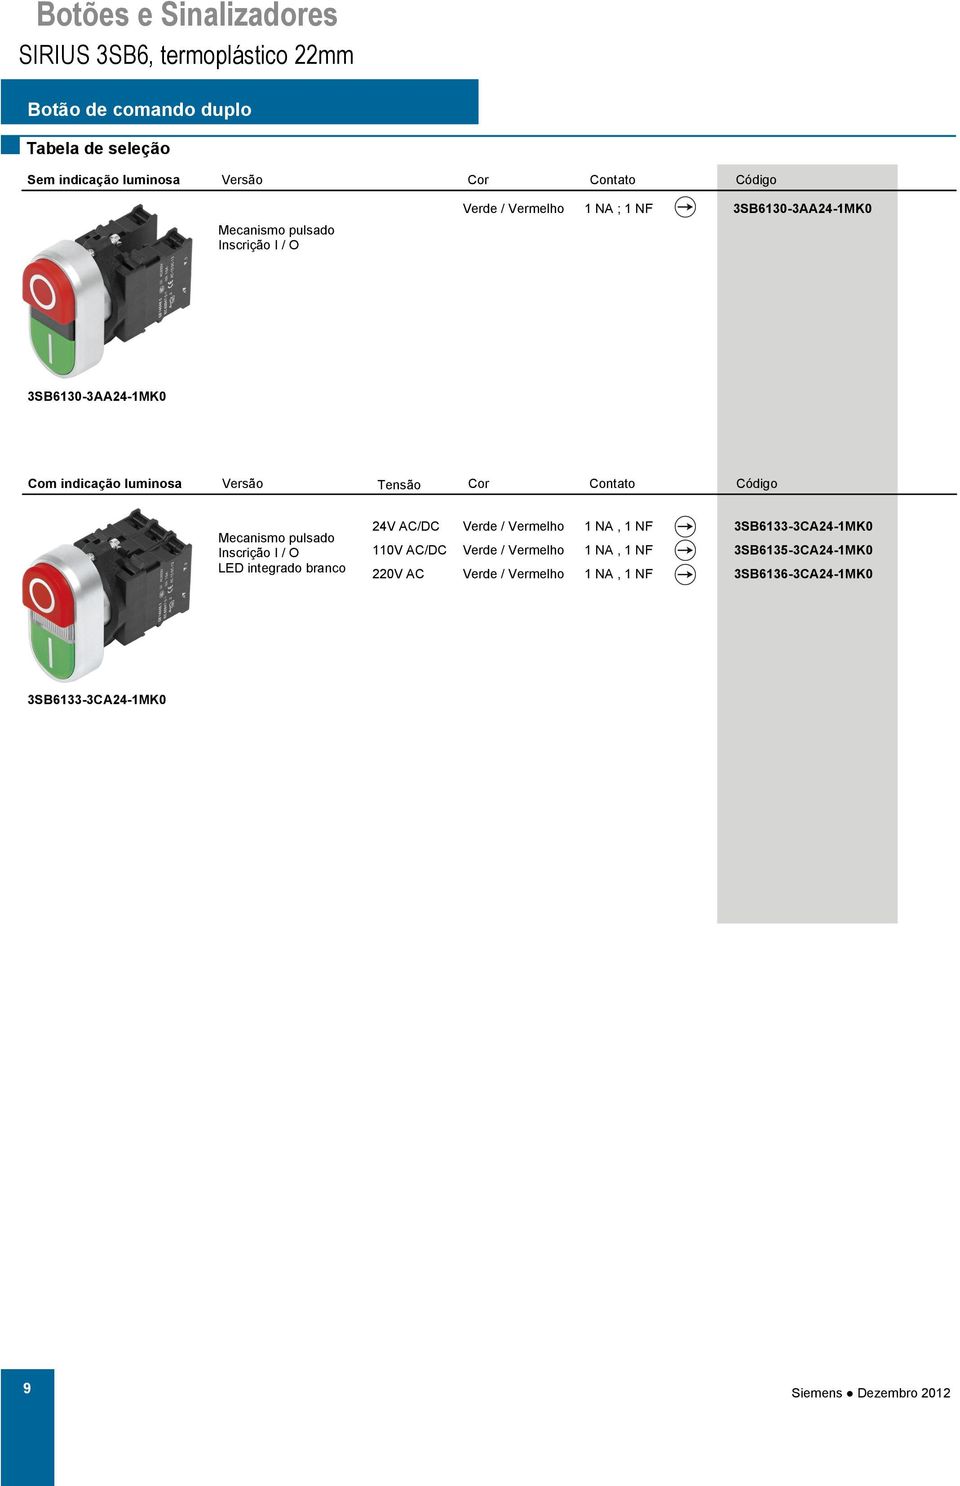 Versão Tensão Contato Inscrição I / O LED integrado branco 24V AC/DC Verde / 1 NA, 1 NF 3SB6133-3CA24-1MK0